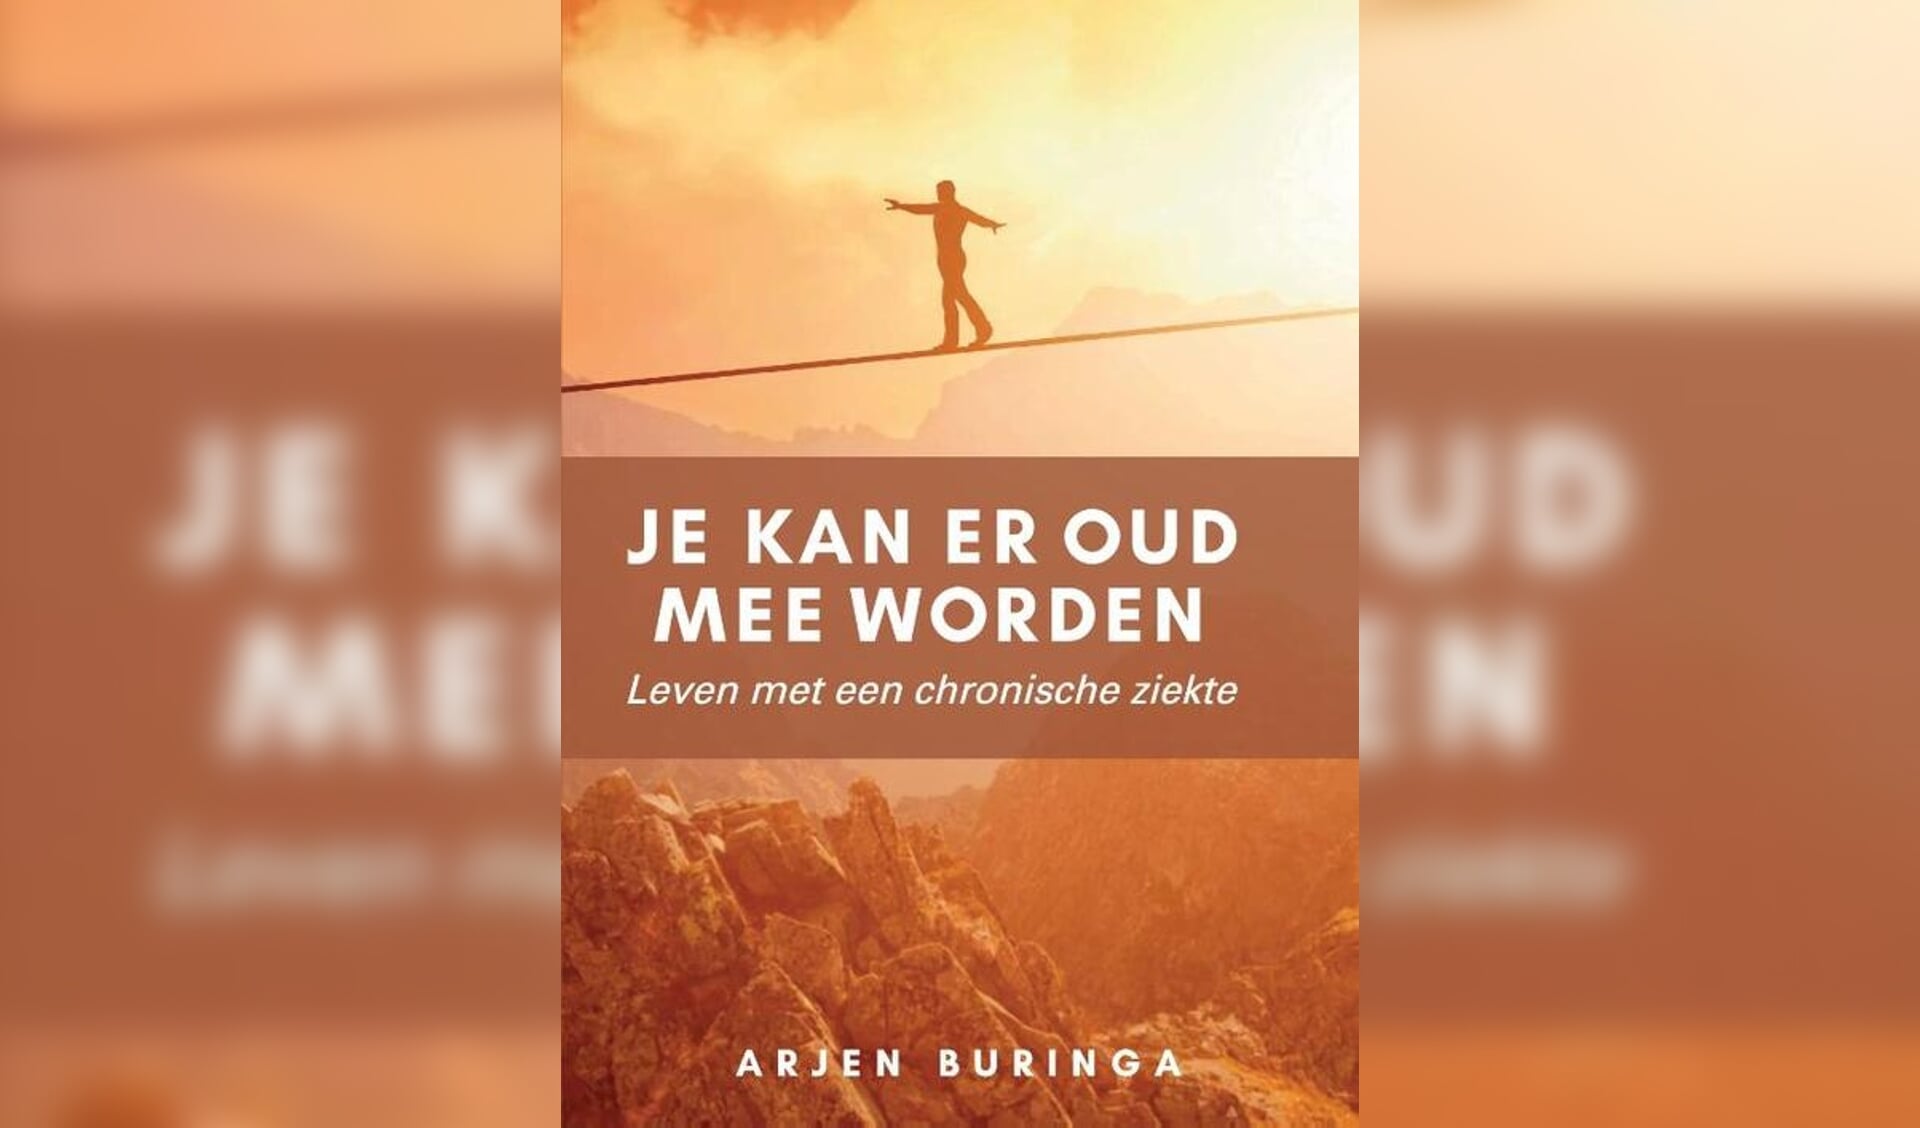  Arjen Buringa schreef een boek over diabetes.